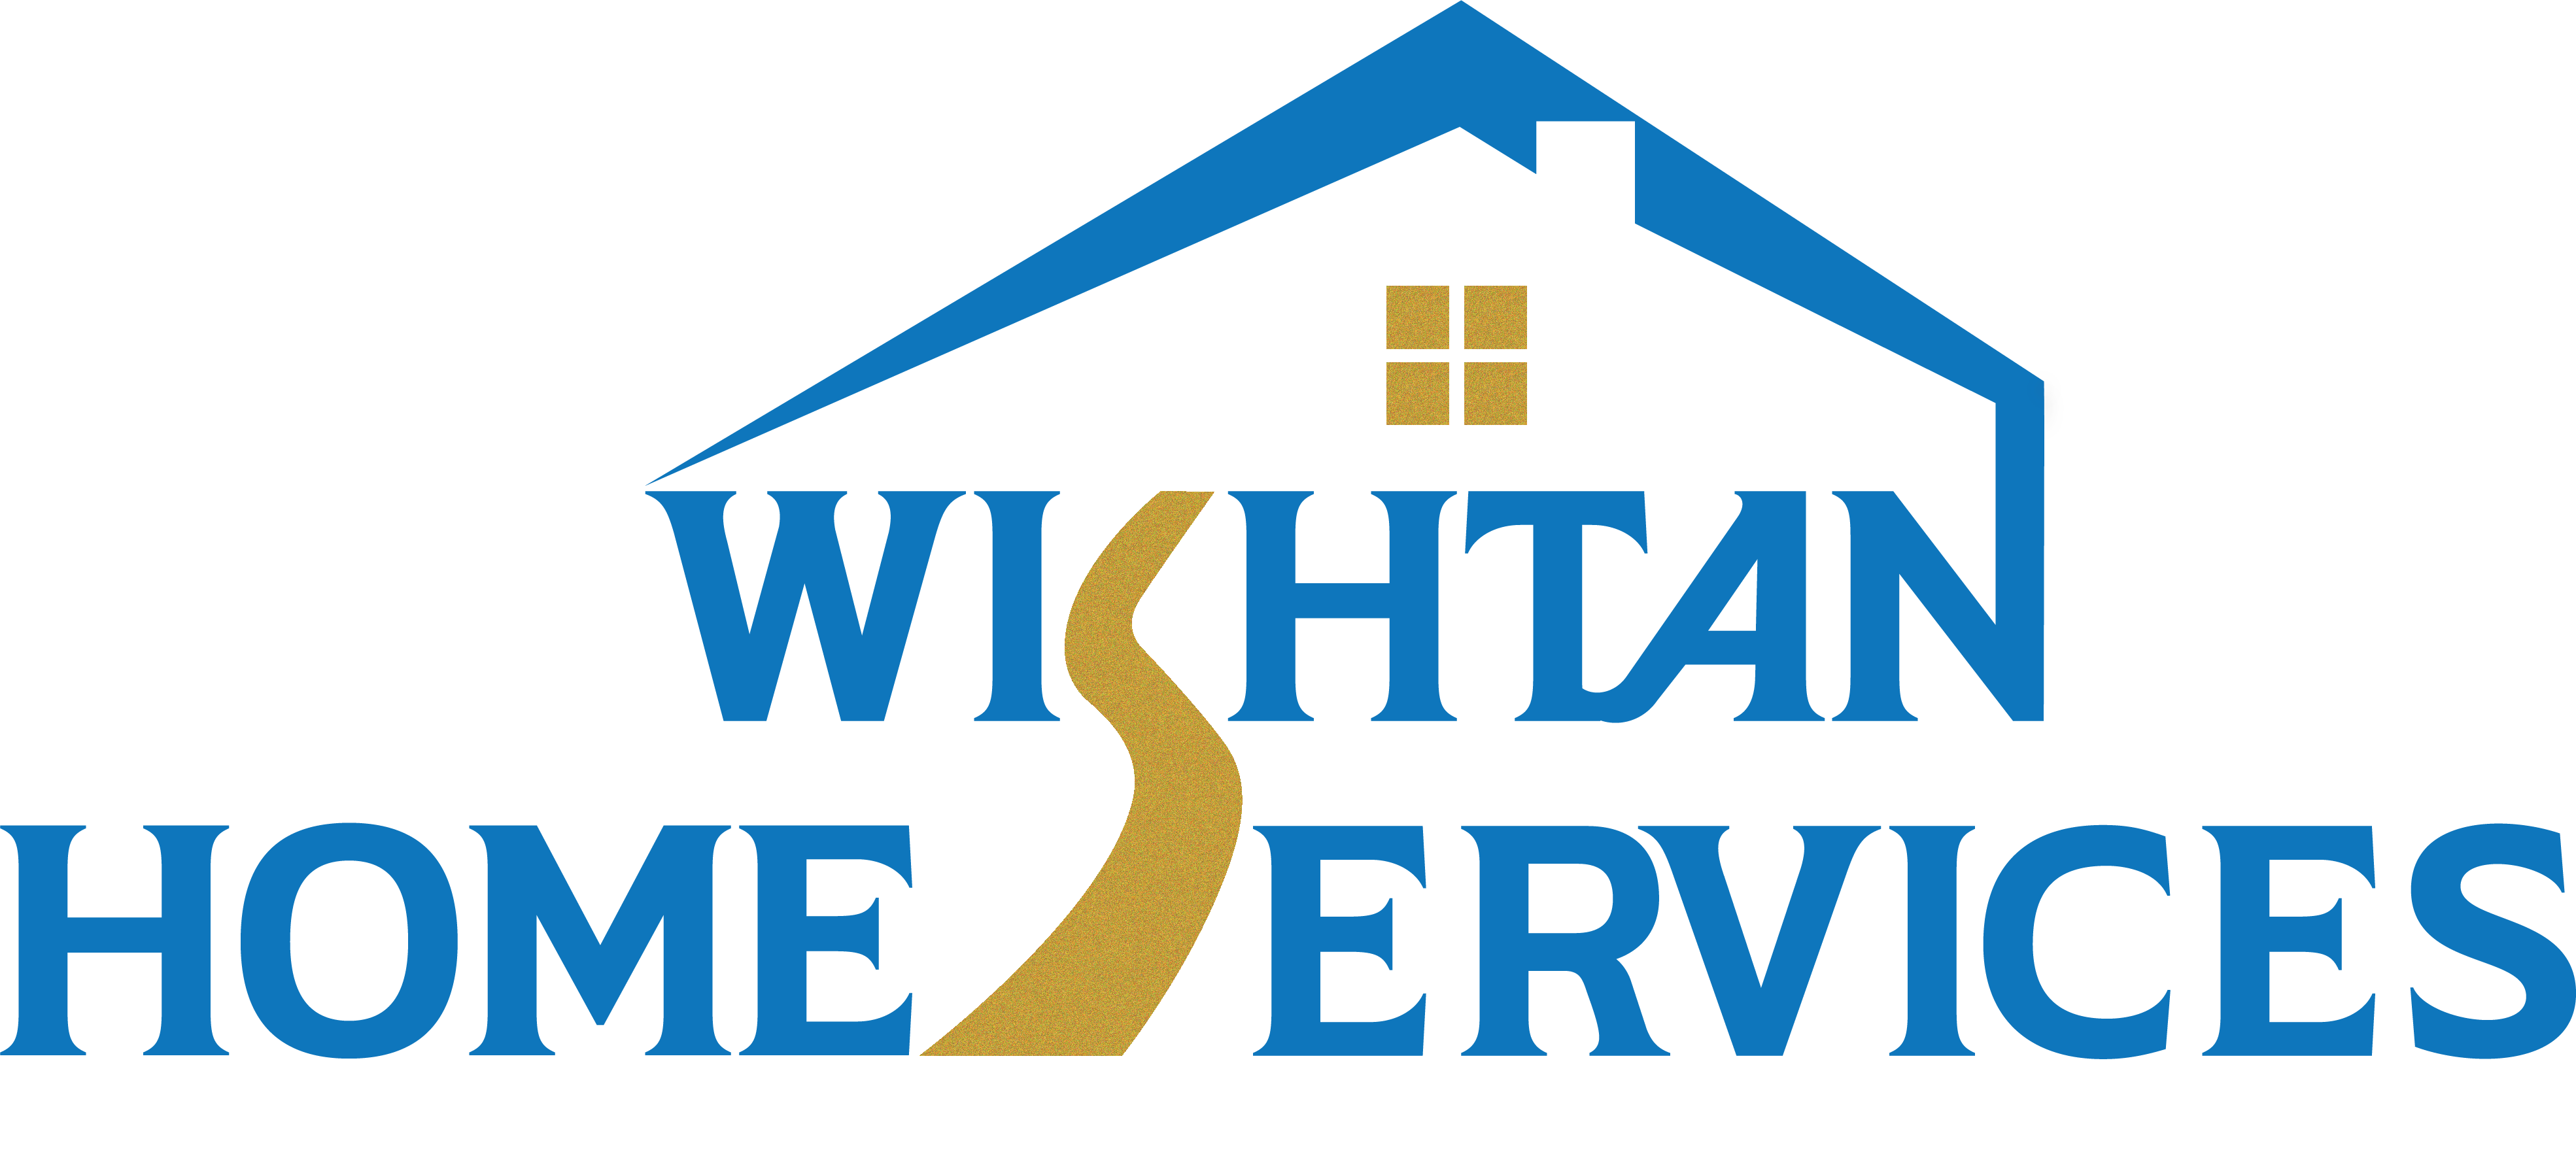 Wishtan HomeServices logo